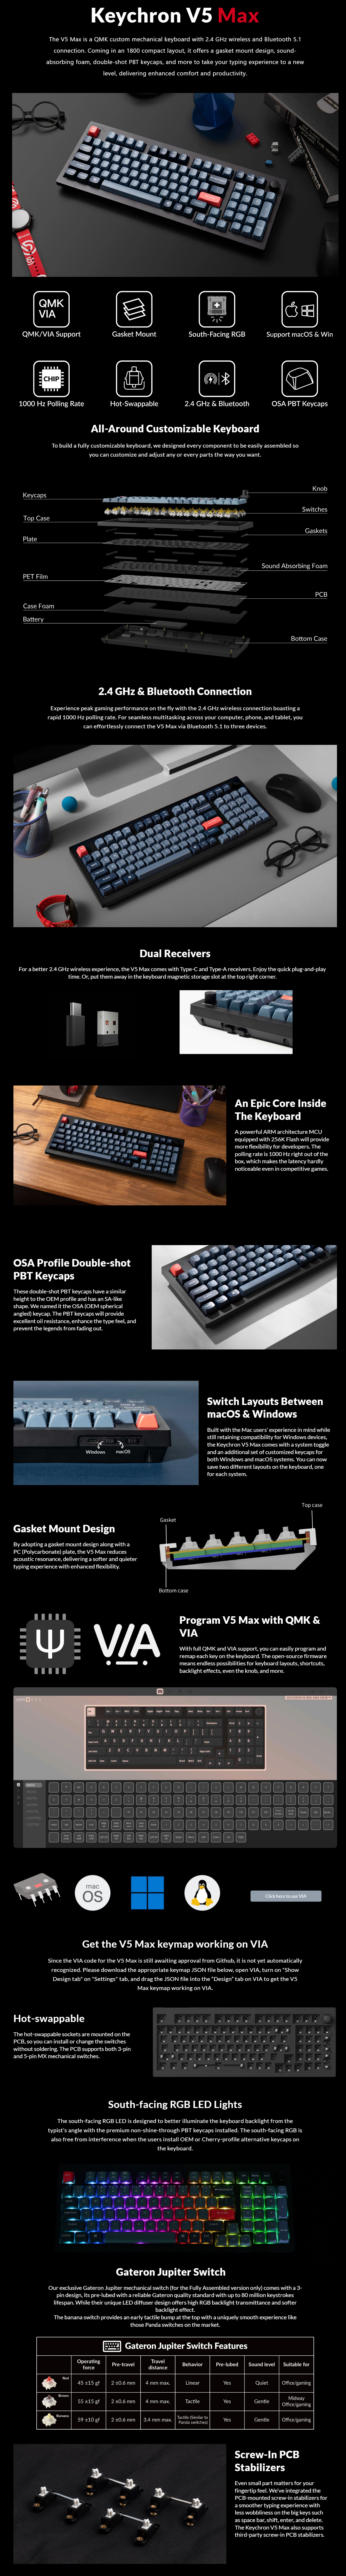 Keyboards-Keychron-V5-MAX-96-Full-Assembled-Knob-RGB-Hot-Swap-Wireless-QMK-Custom-Keyboard-Gateron-Jupiter-Red-Switch-KBKCV5MD1-1